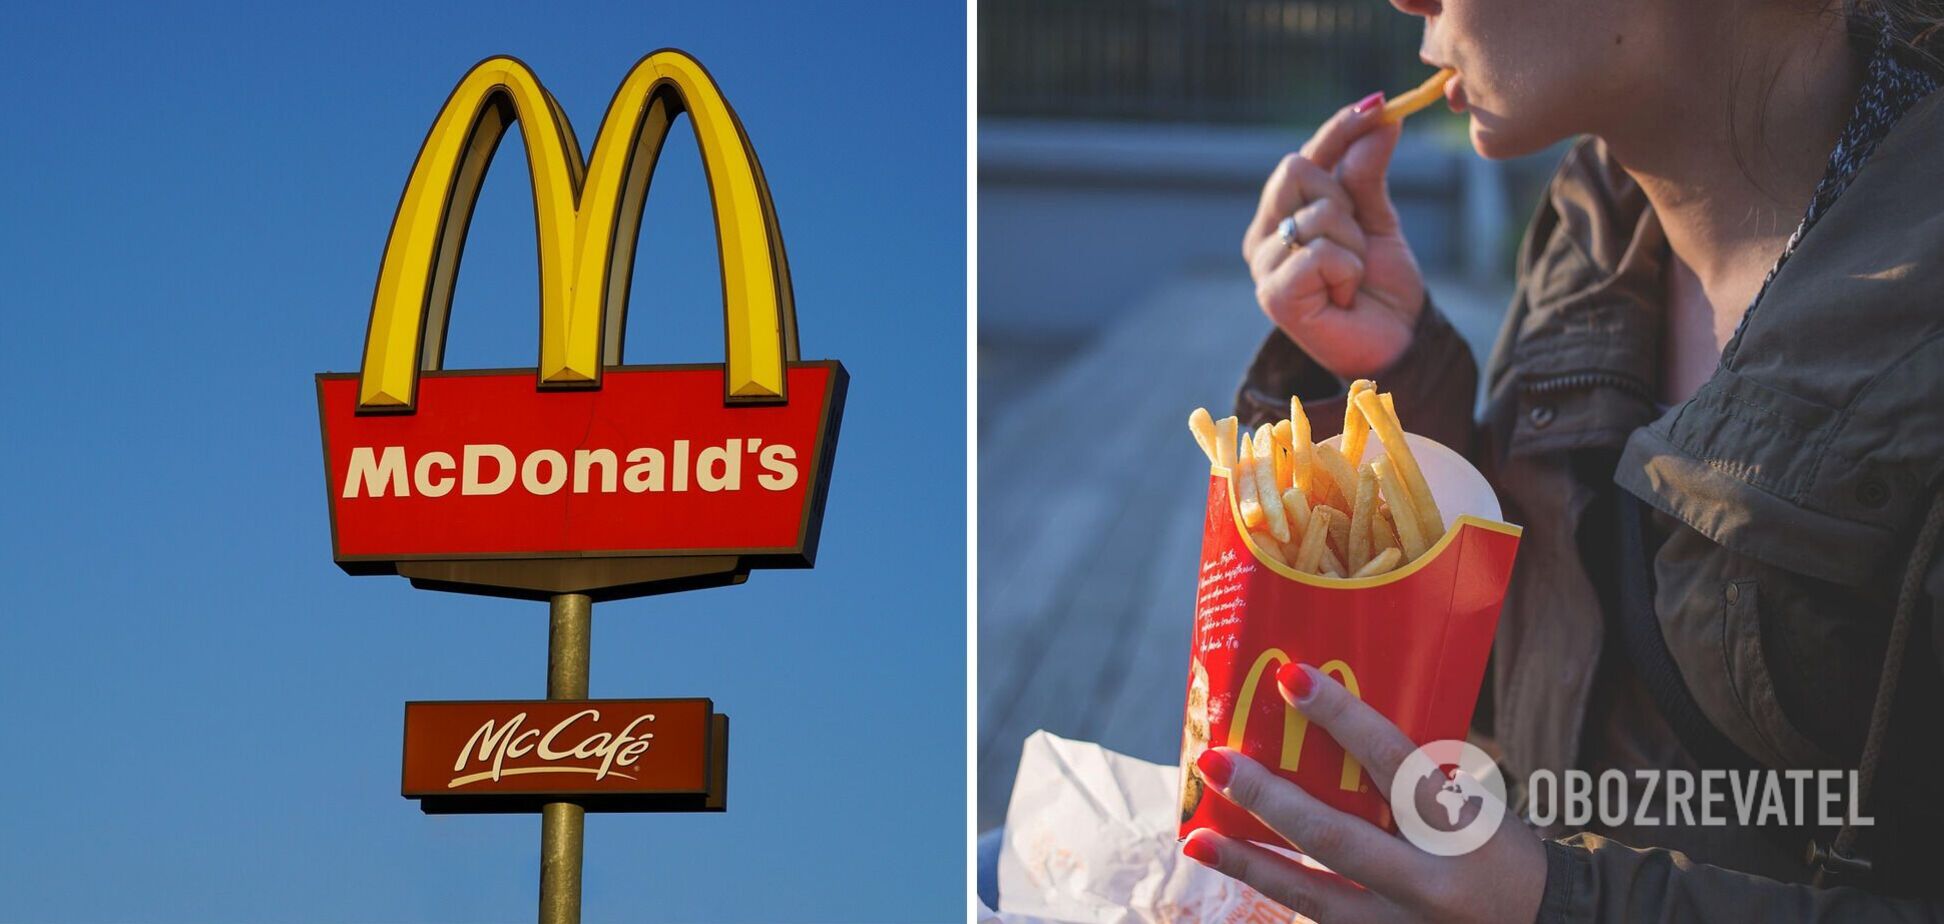 Рестораны McDonald's открываются все активнее